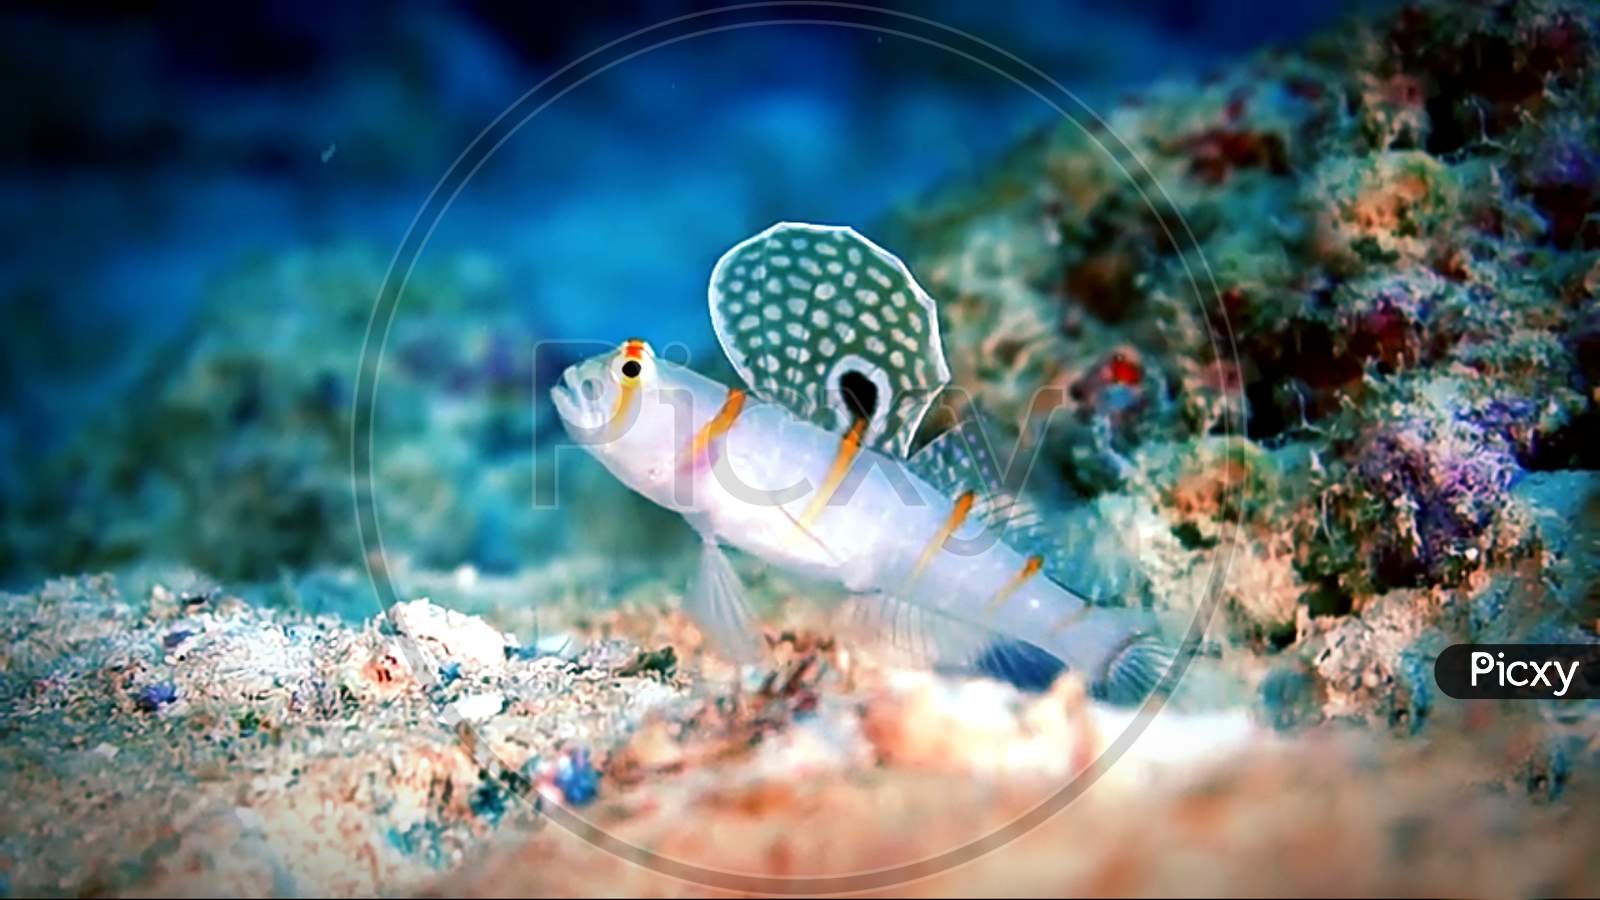 tropical fish in aquarium or underwater fish